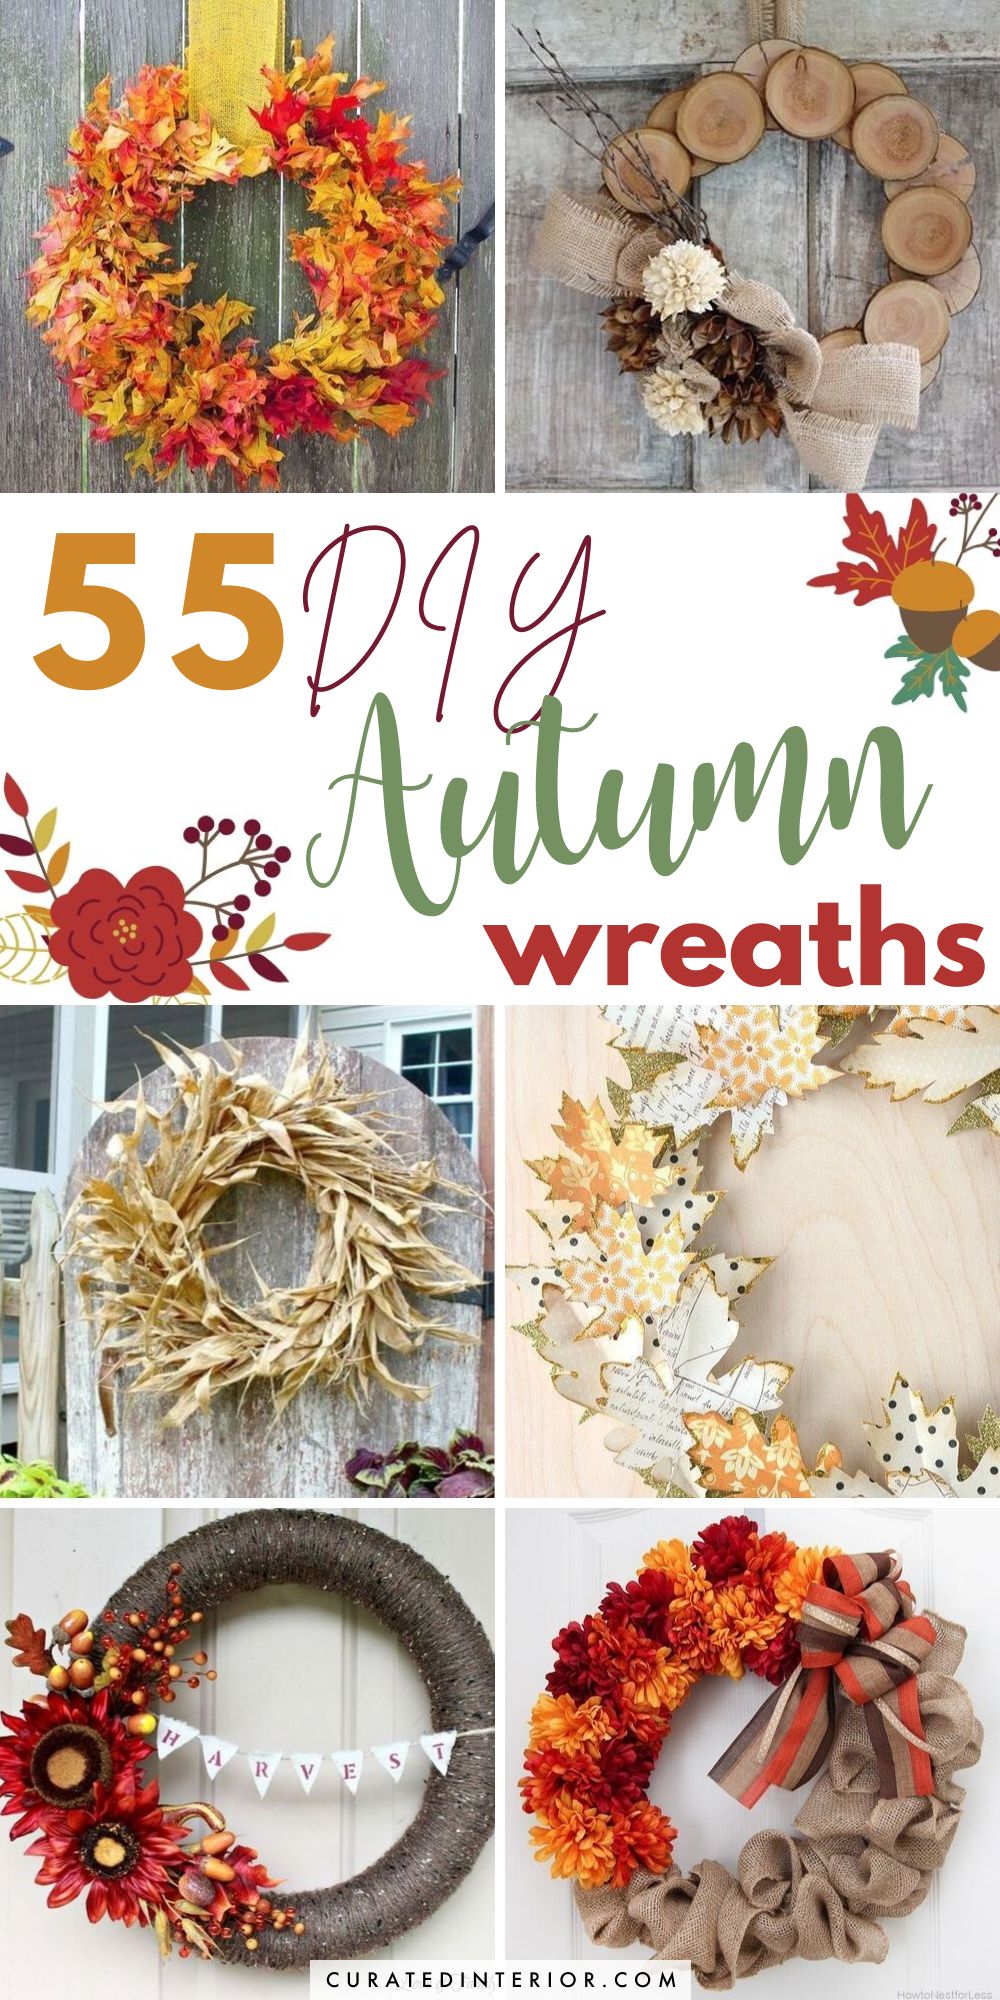 55 DIY Autumn Wreaths You'll Love Making this Fall!